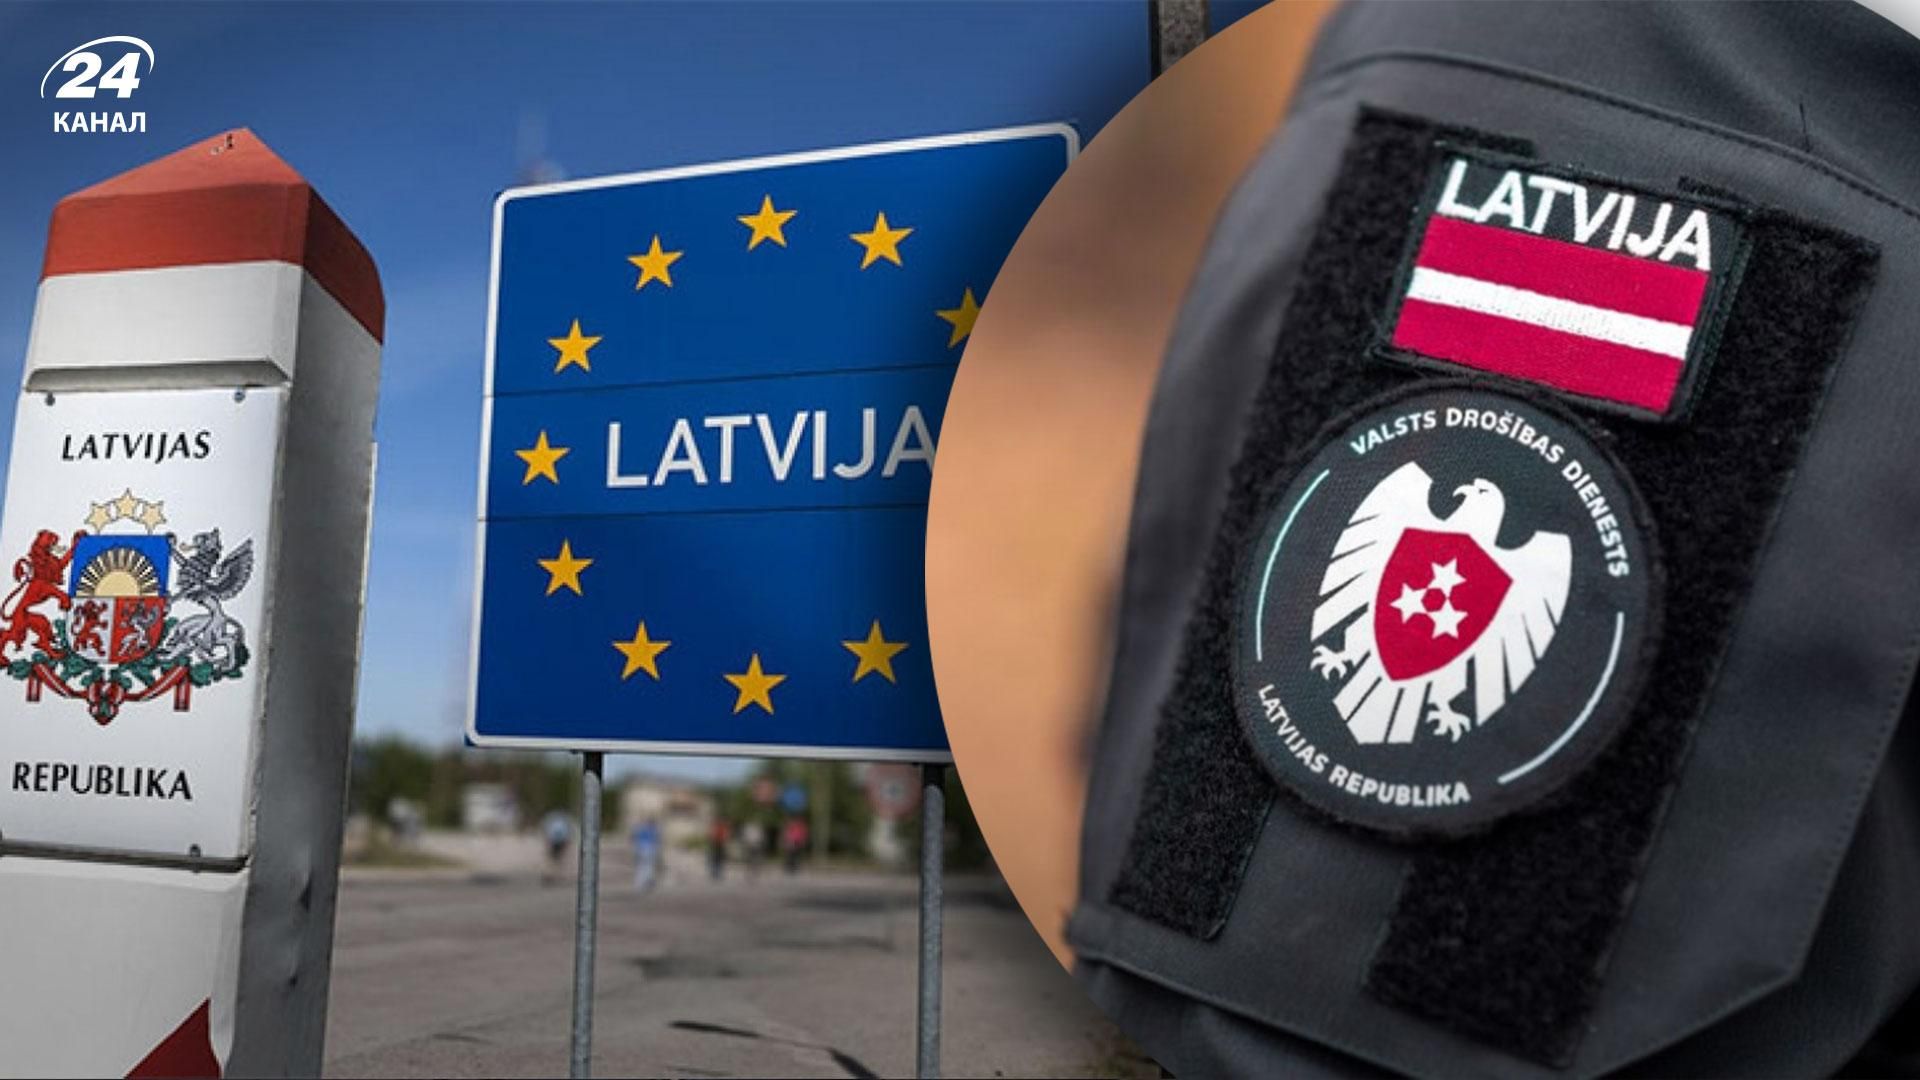 Спецслужби росії та білорусі намагаються вербувати латвійських чиновників